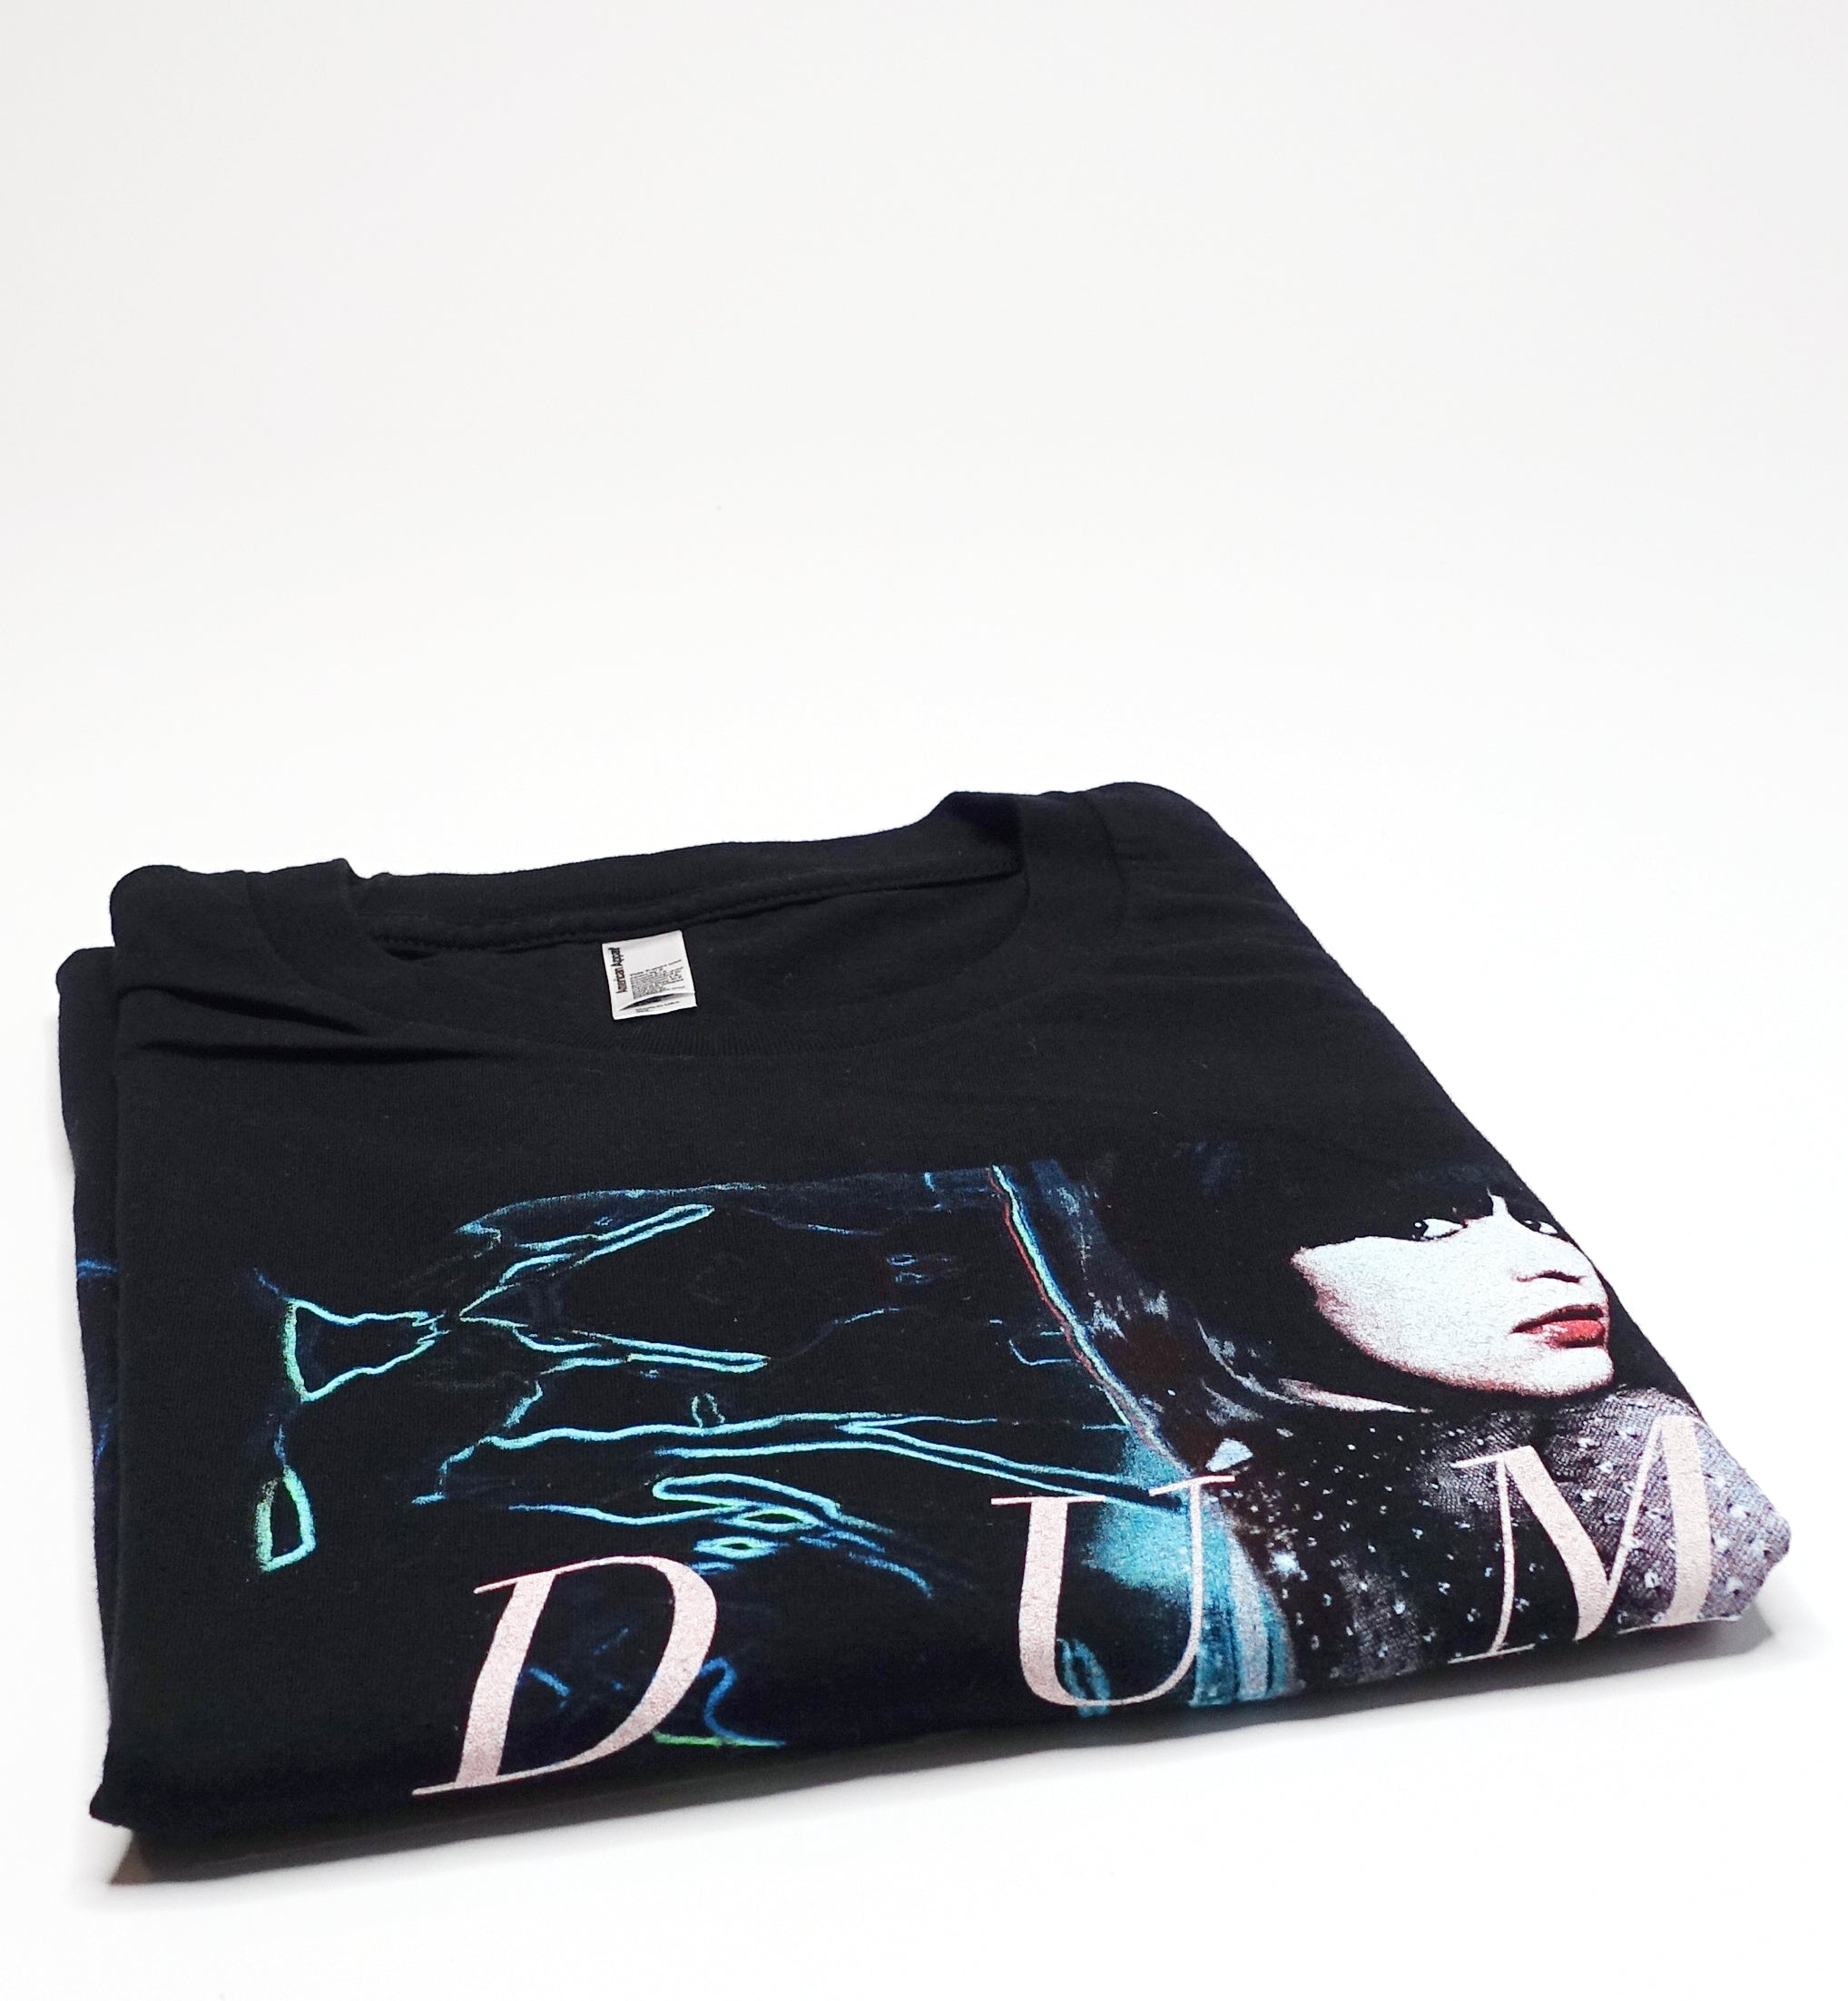 Dum Dum Girls – Only In Dreams 2011 Shirt Size XL